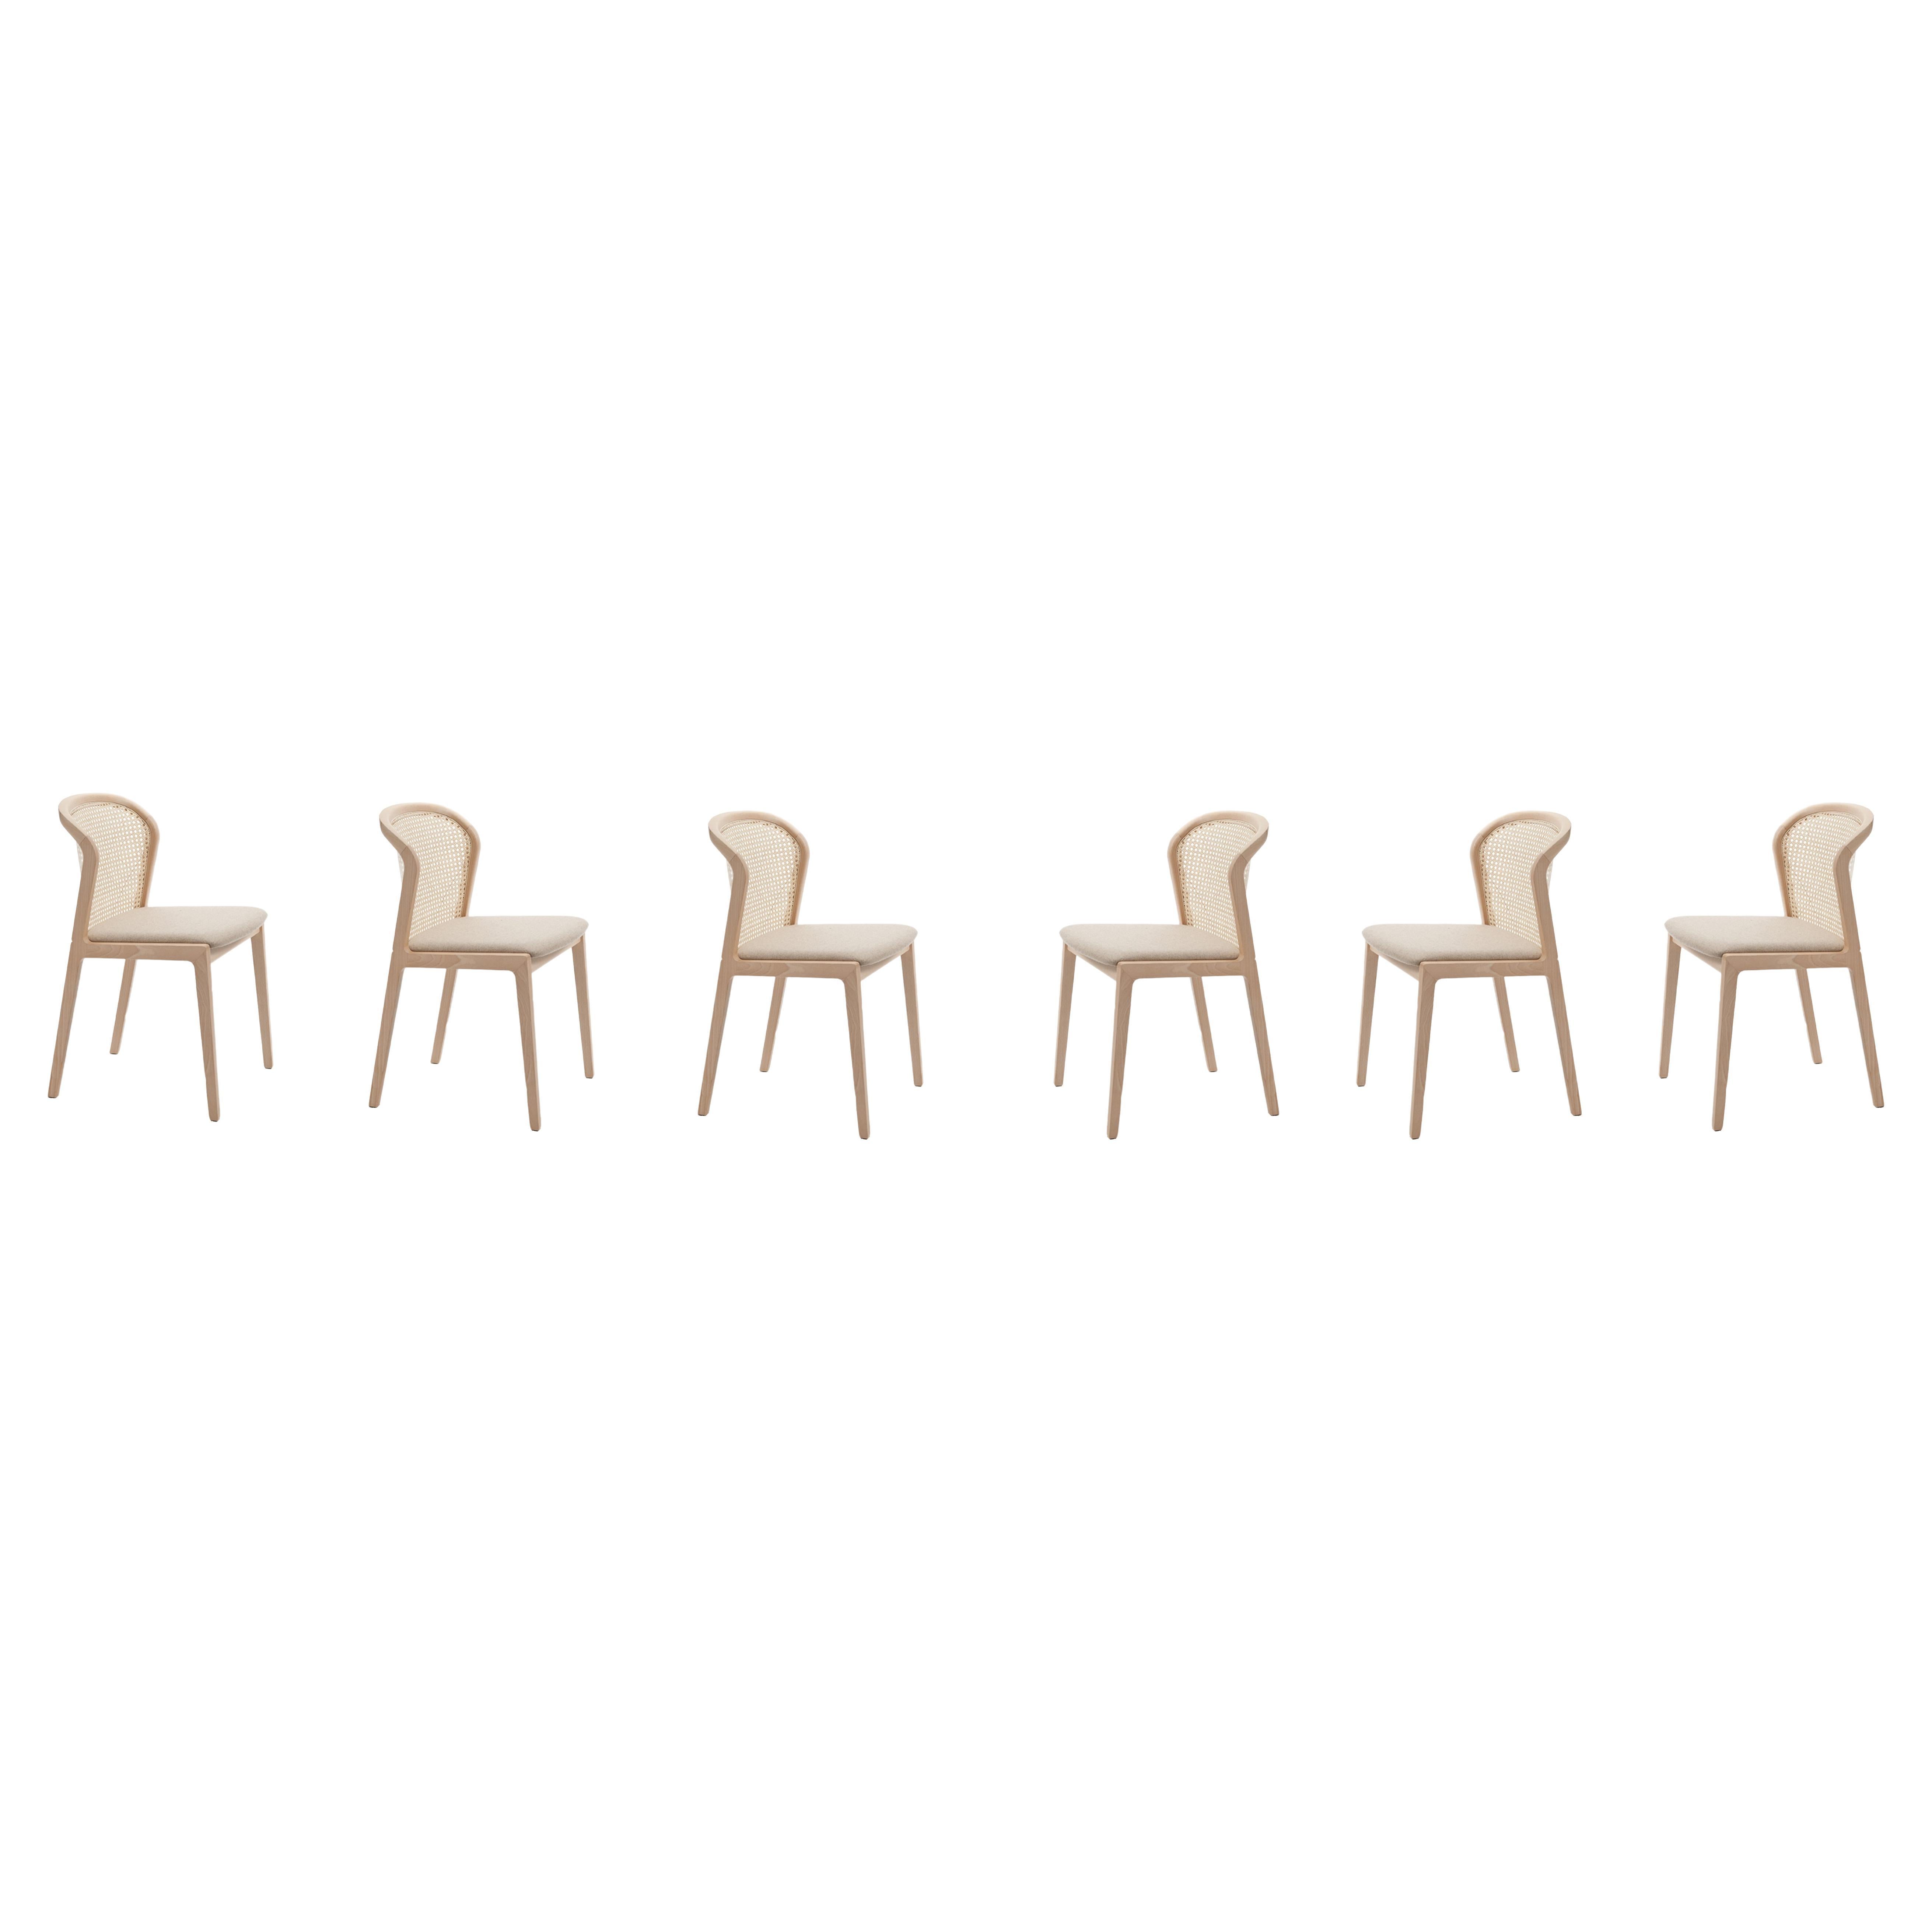 6 Wiener Stuhl aus Buchenholz und Stroh, beige gepolsterter Sitz 100% Made in Italy